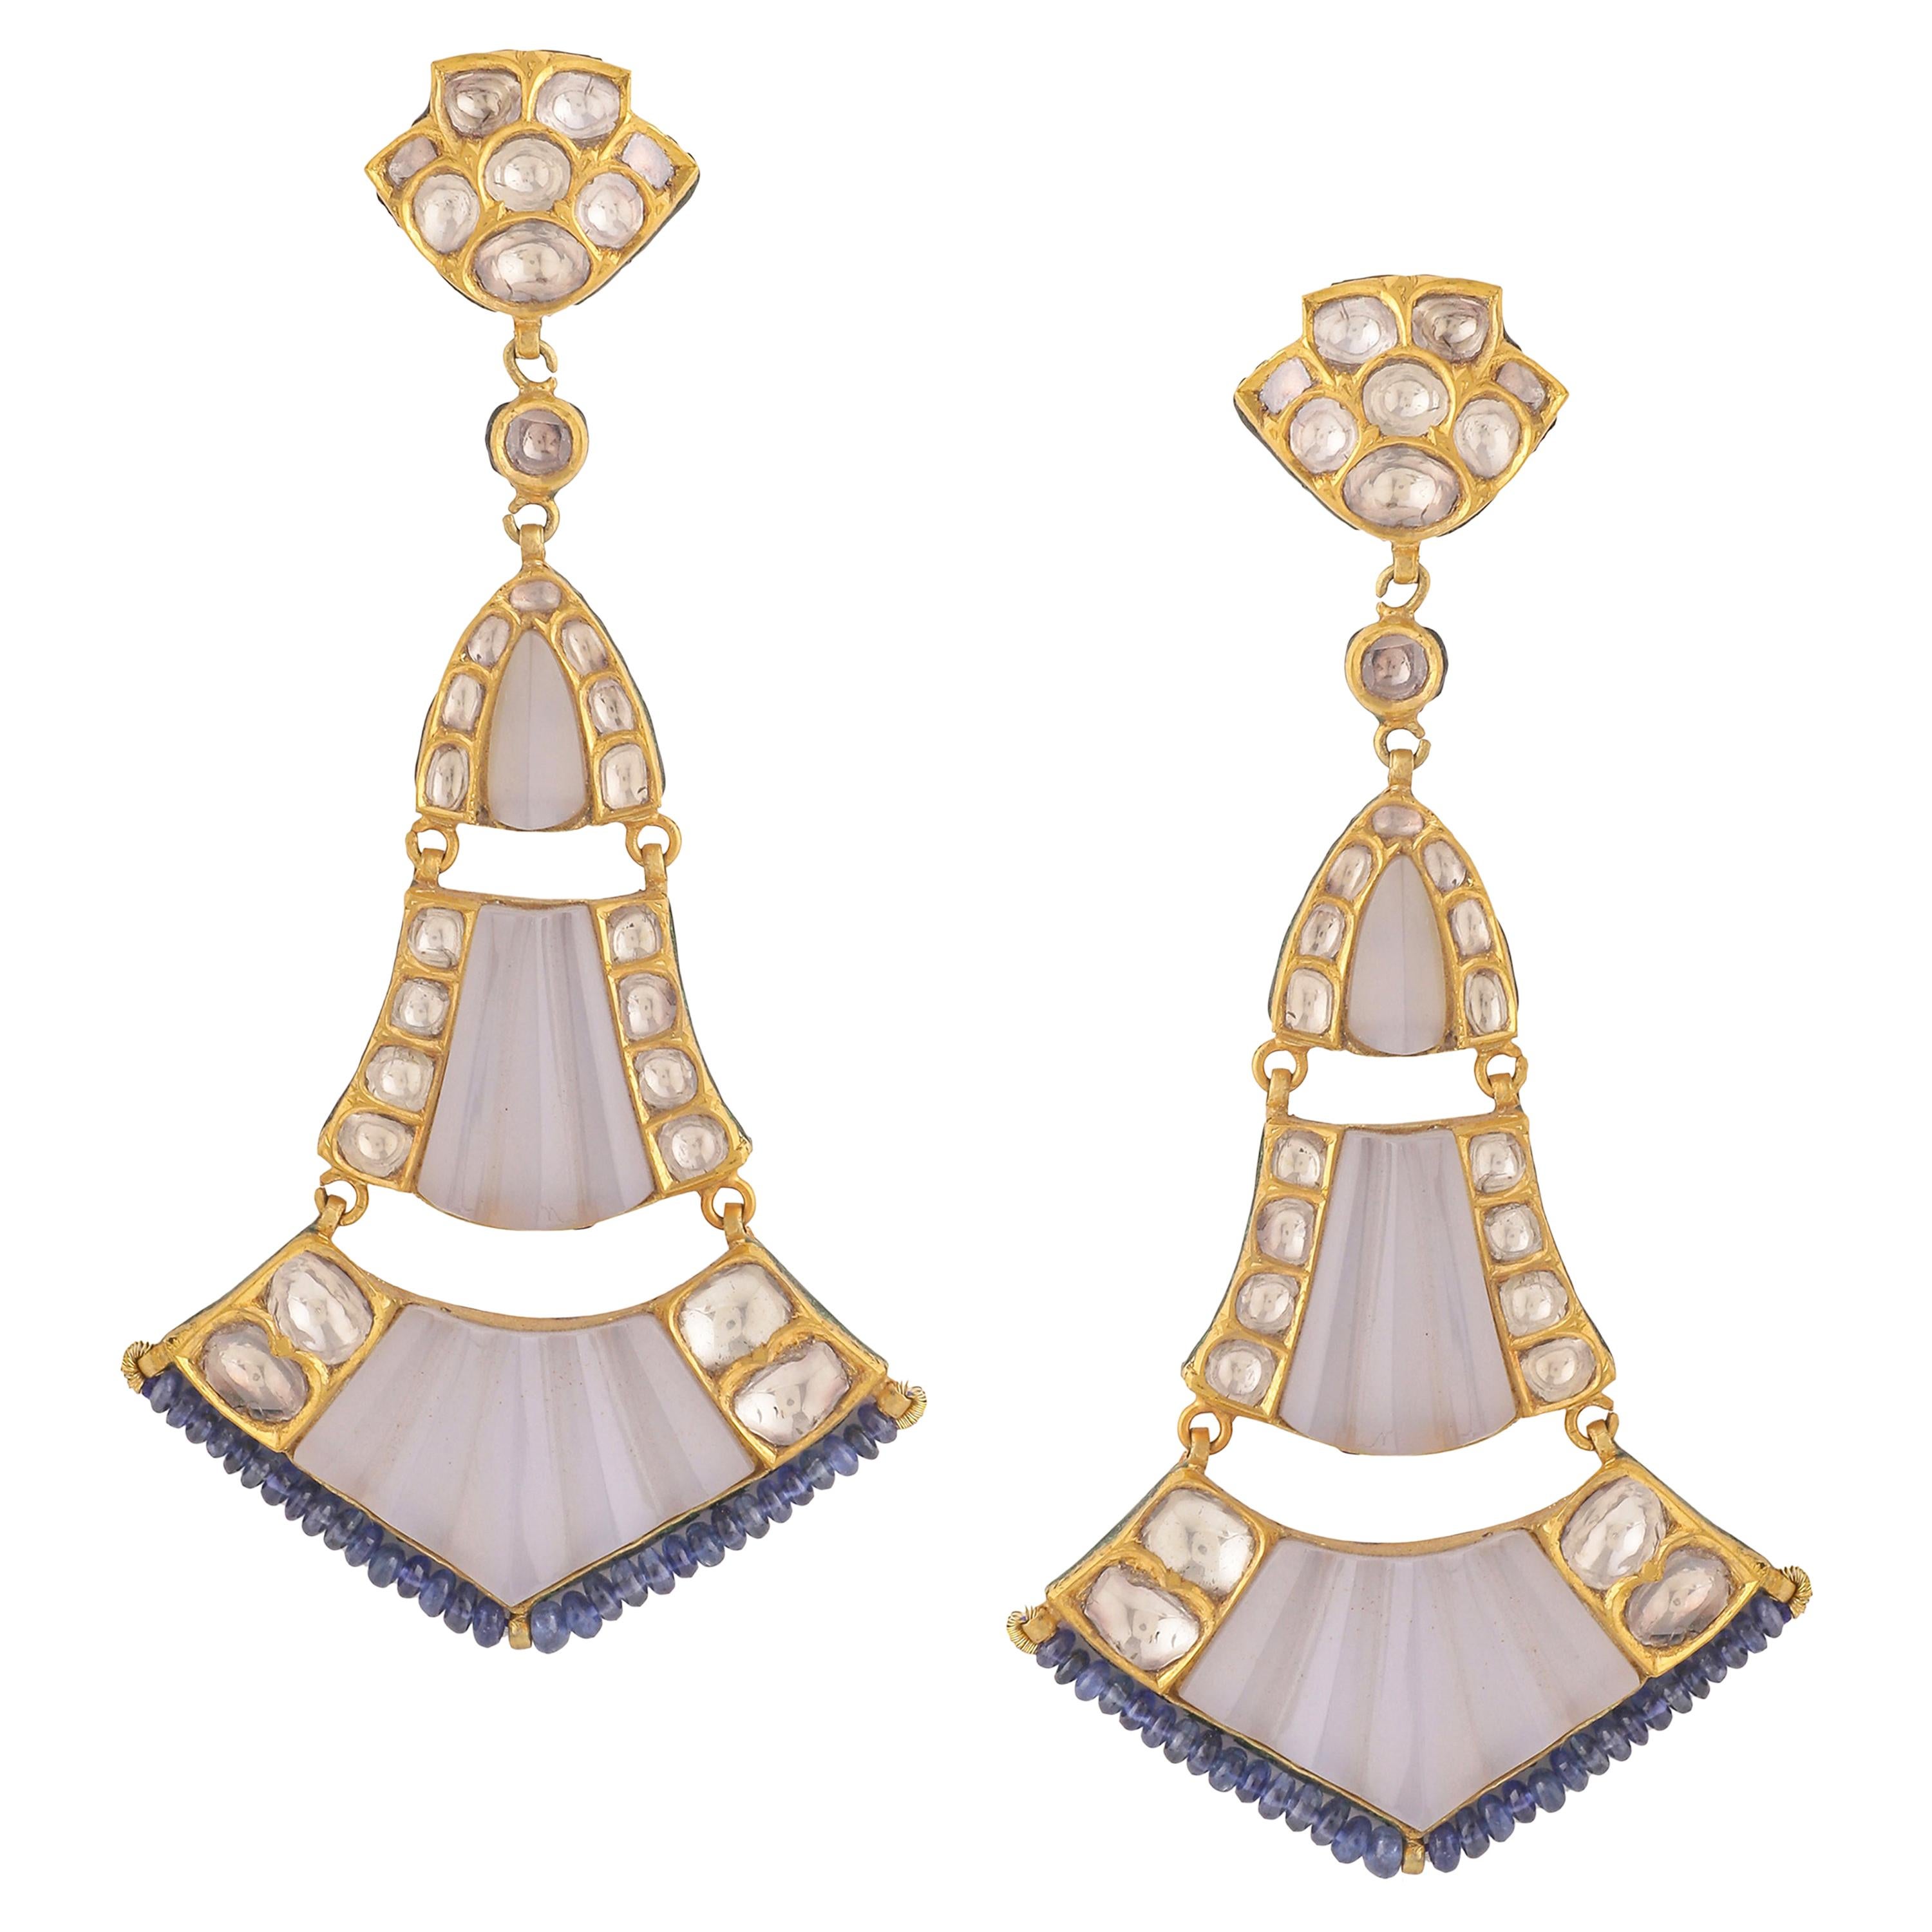 Boucles d'oreilles lustre en or 18 carats avec diamants, calcédoine sculptée et perles de saphir